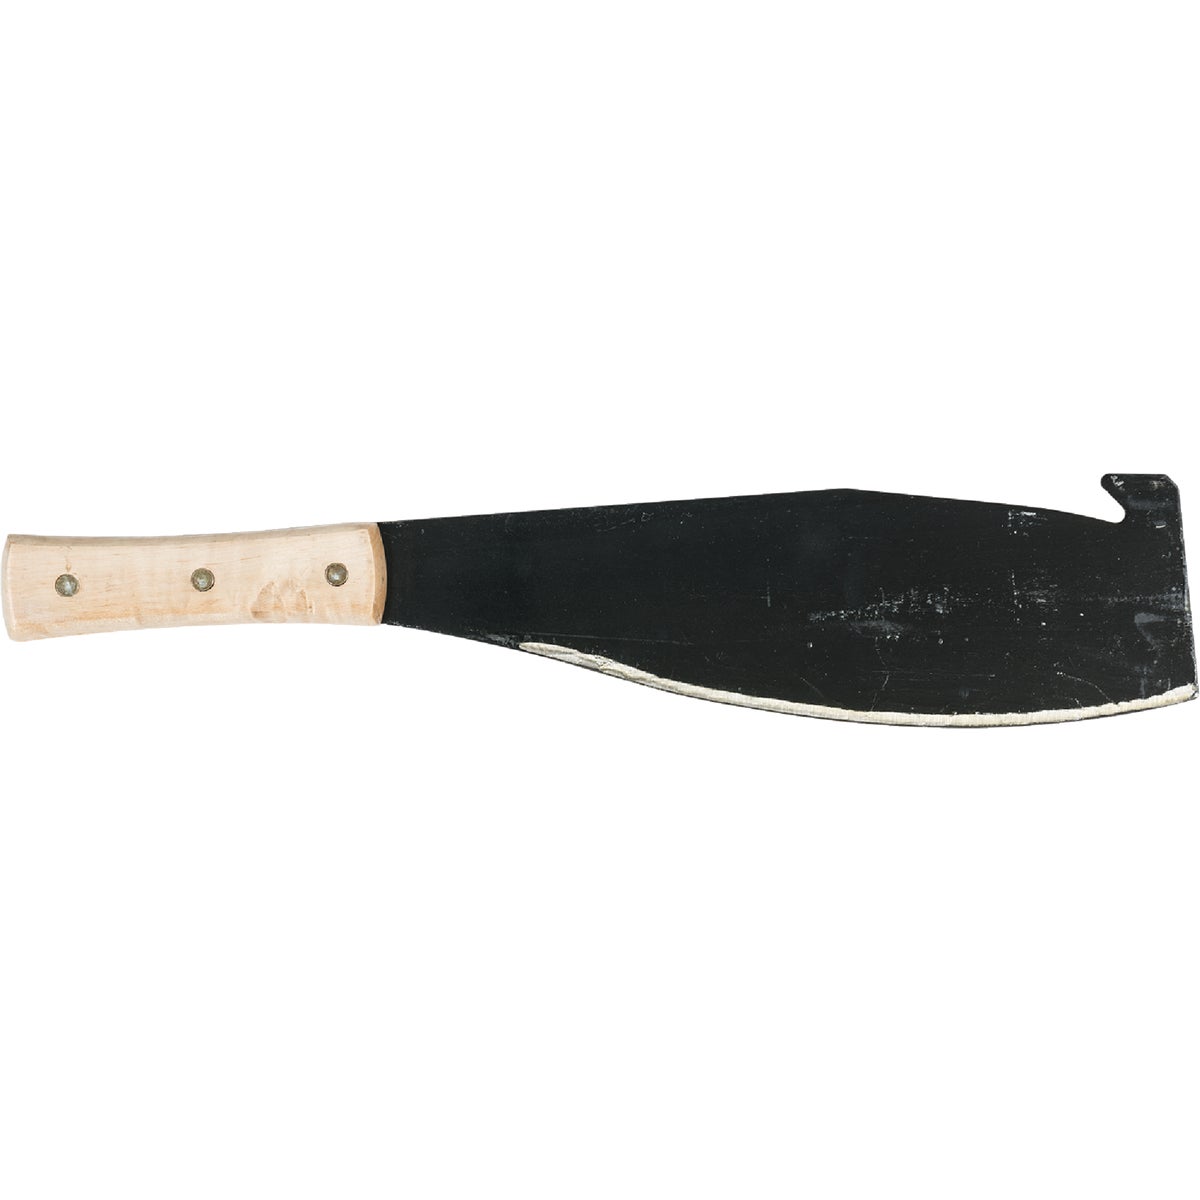 Seymour S400 13 In. Jobsite Cane Knife